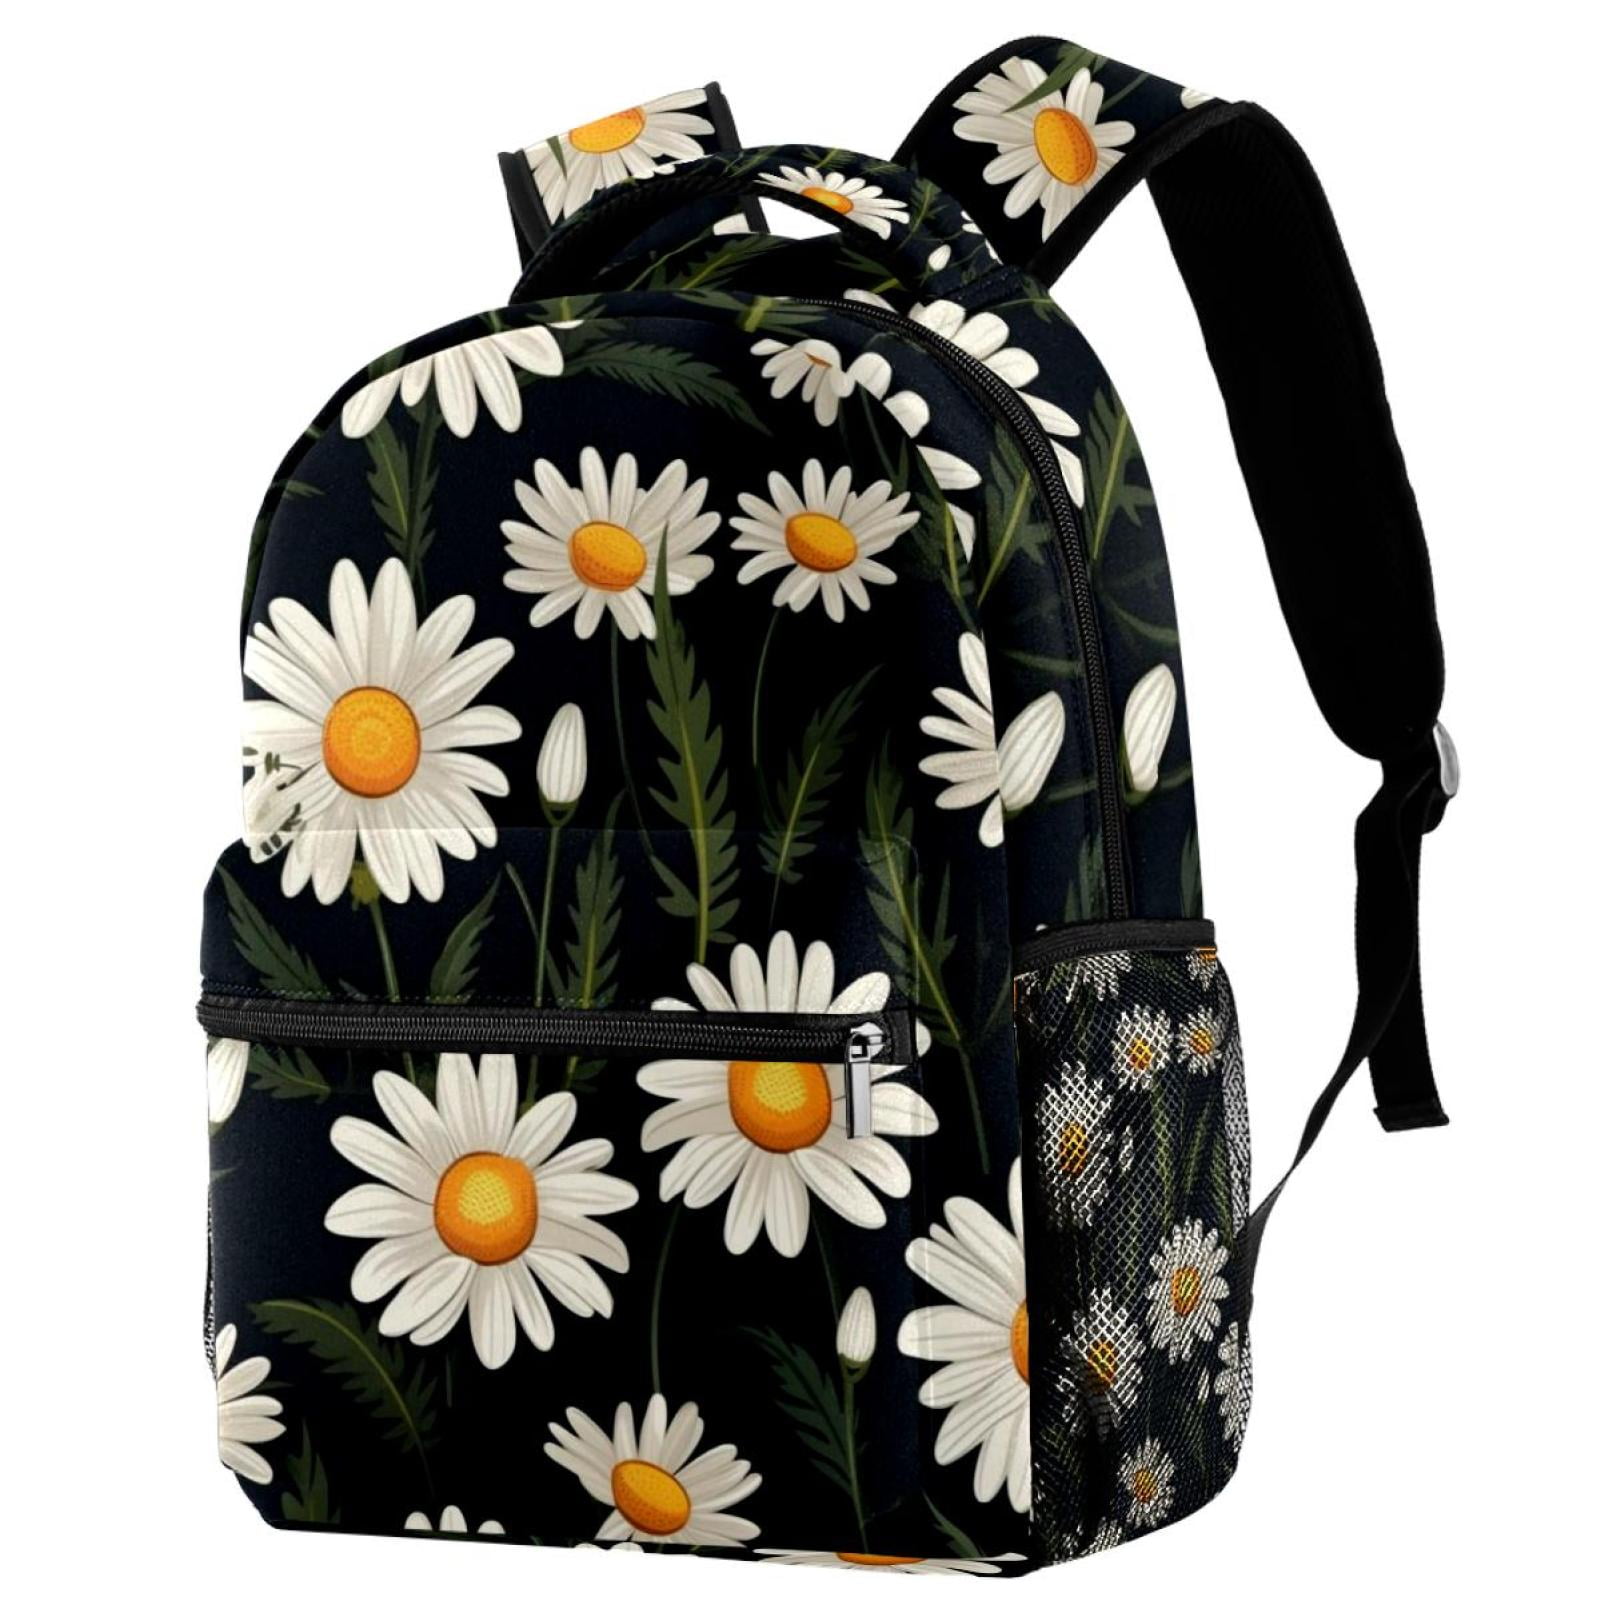 Daisy School Backpack , Travel Bag for Women Girls Men Boys Teens, 29 ...